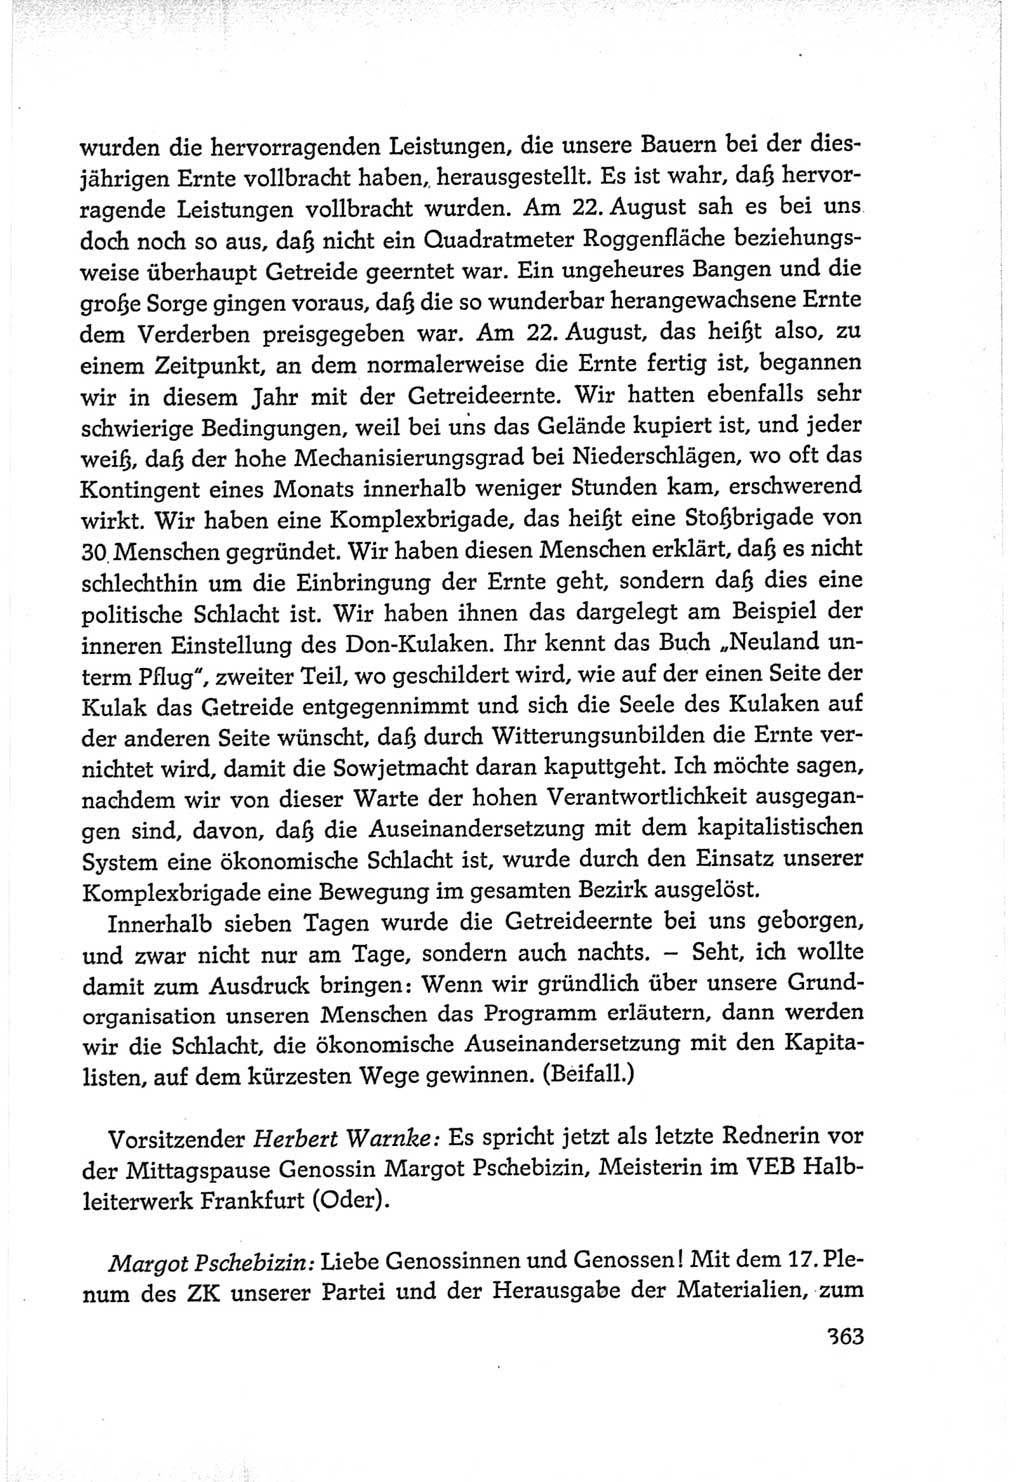 Protokoll der Verhandlungen des Ⅵ. Parteitages der Sozialistischen Einheitspartei Deutschlands (SED) [Deutsche Demokratische Republik (DDR)] 1963, Band Ⅰ, Seite 363 (Prot. Verh. Ⅵ. PT SED DDR 1963, Bd. Ⅰ, S. 363)